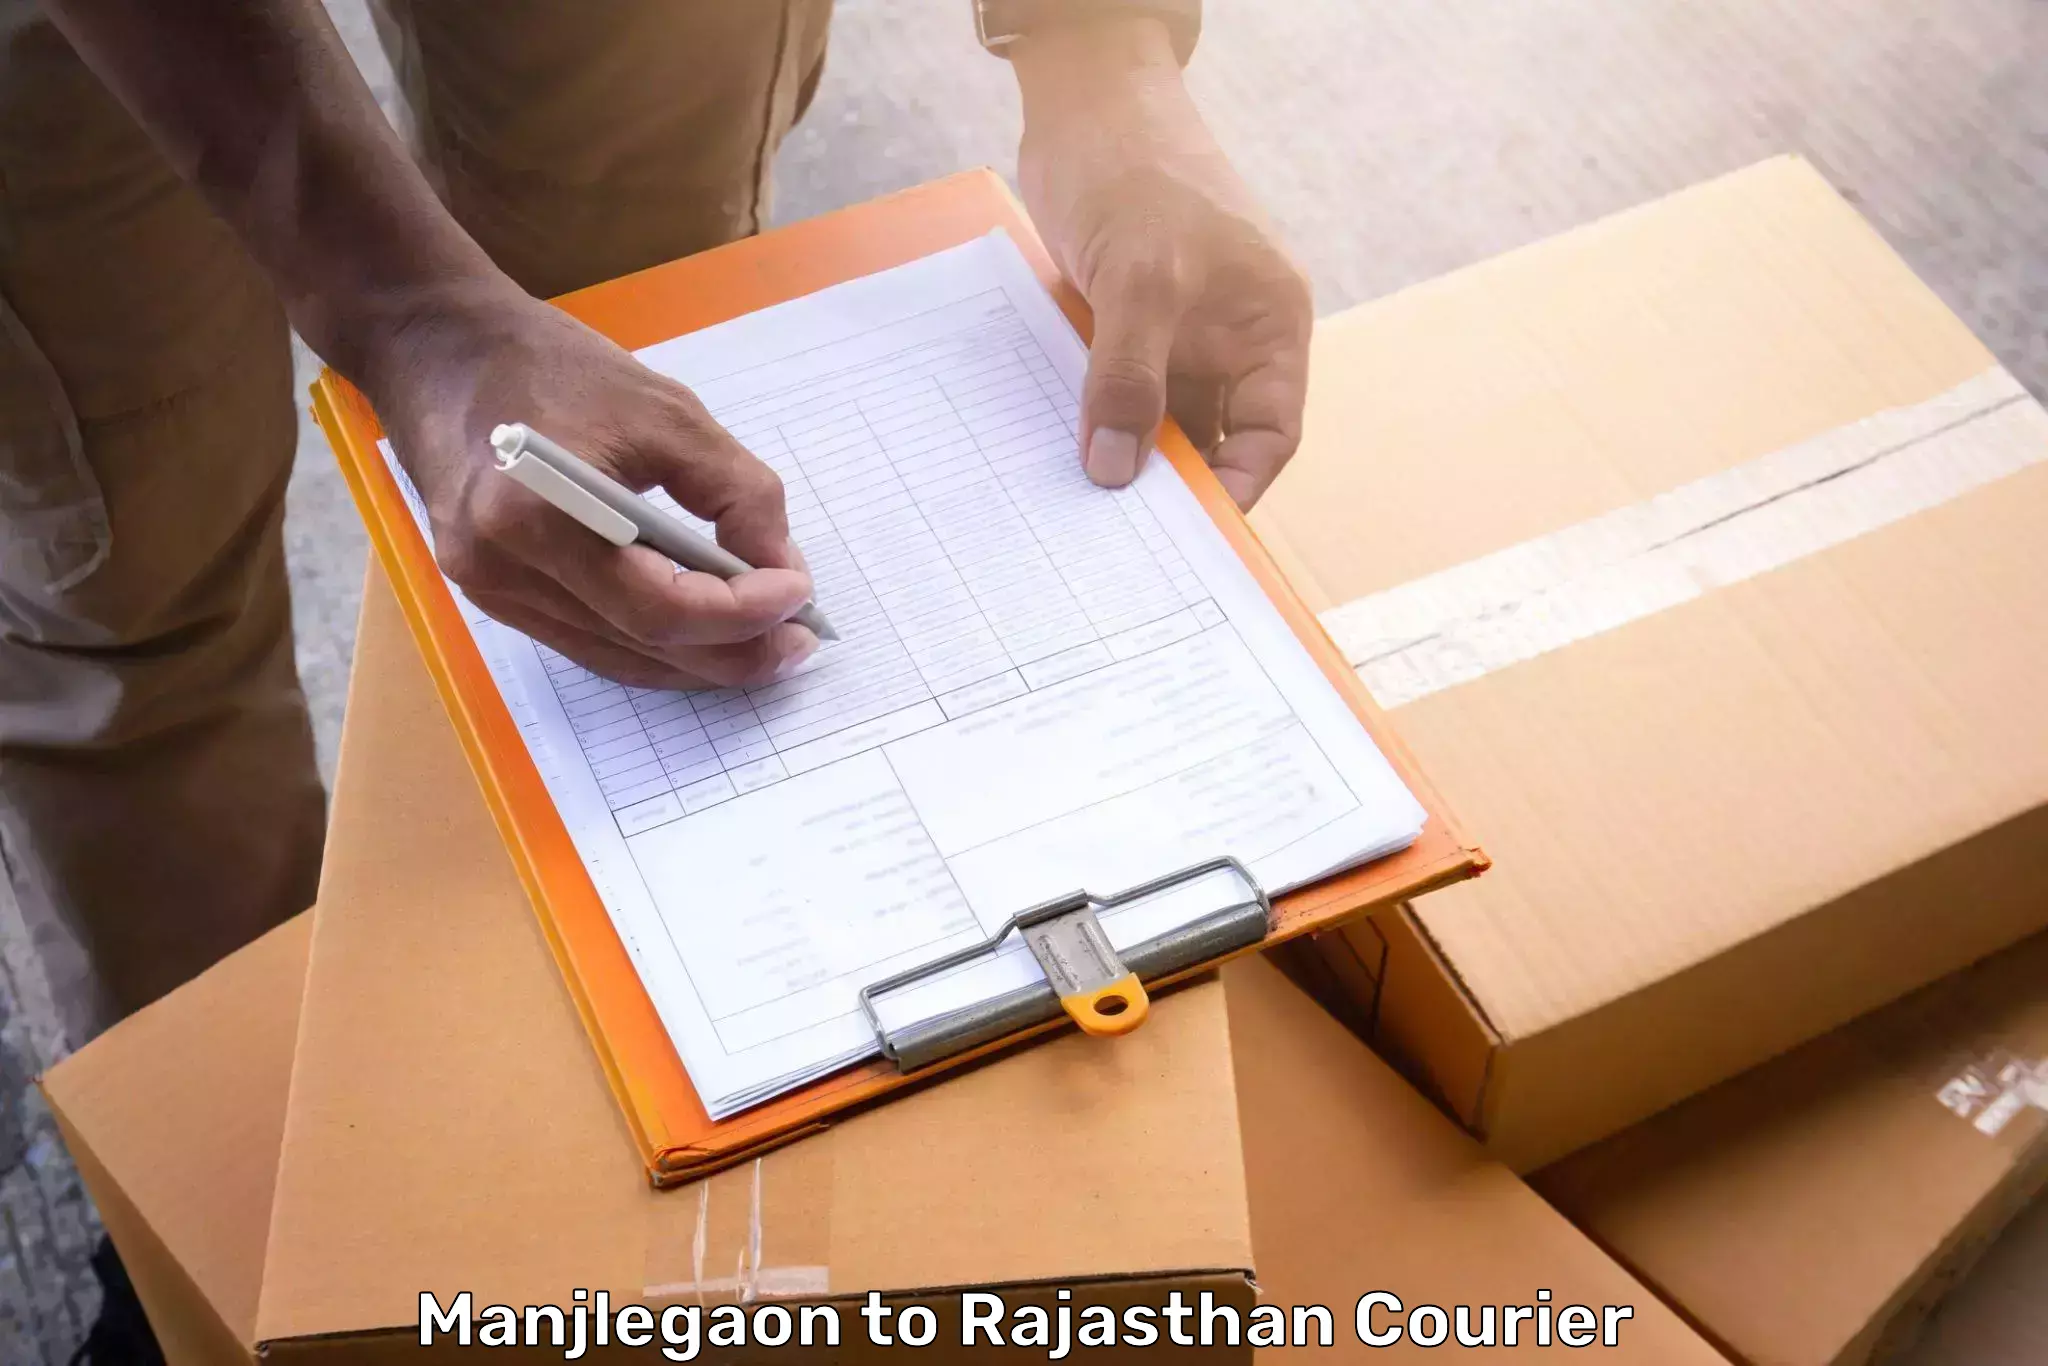 Baggage shipping experience Manjlegaon to Anupgarh